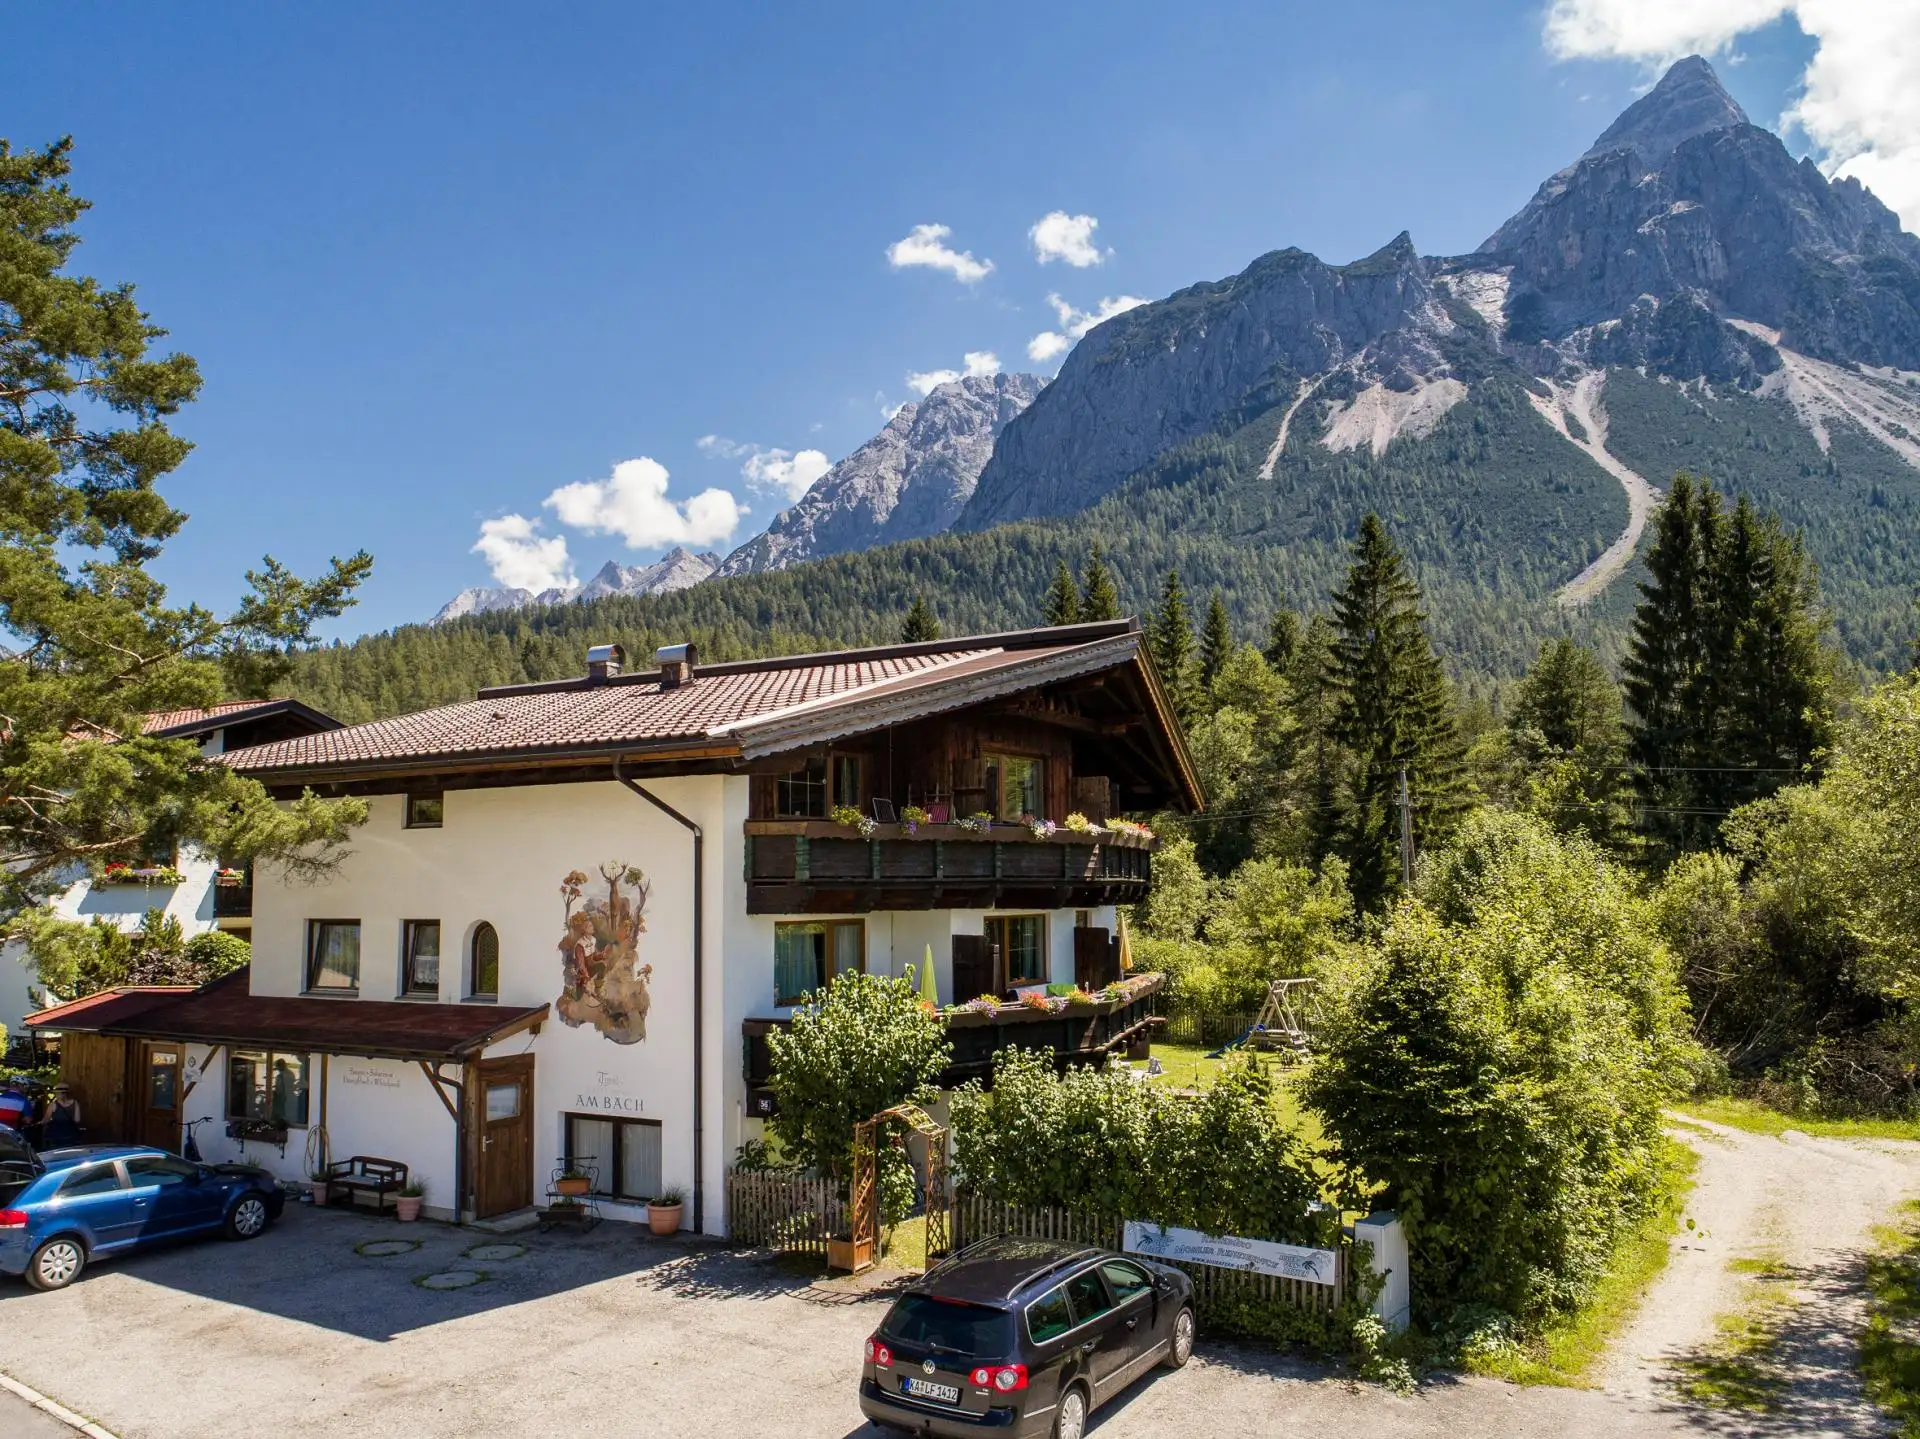 Tyrol Appartements #Willkommen#Bildergalerie#Wohneinheiten#Preise#Anfragen#Buchen#Impressum#Sitemap#Sommer